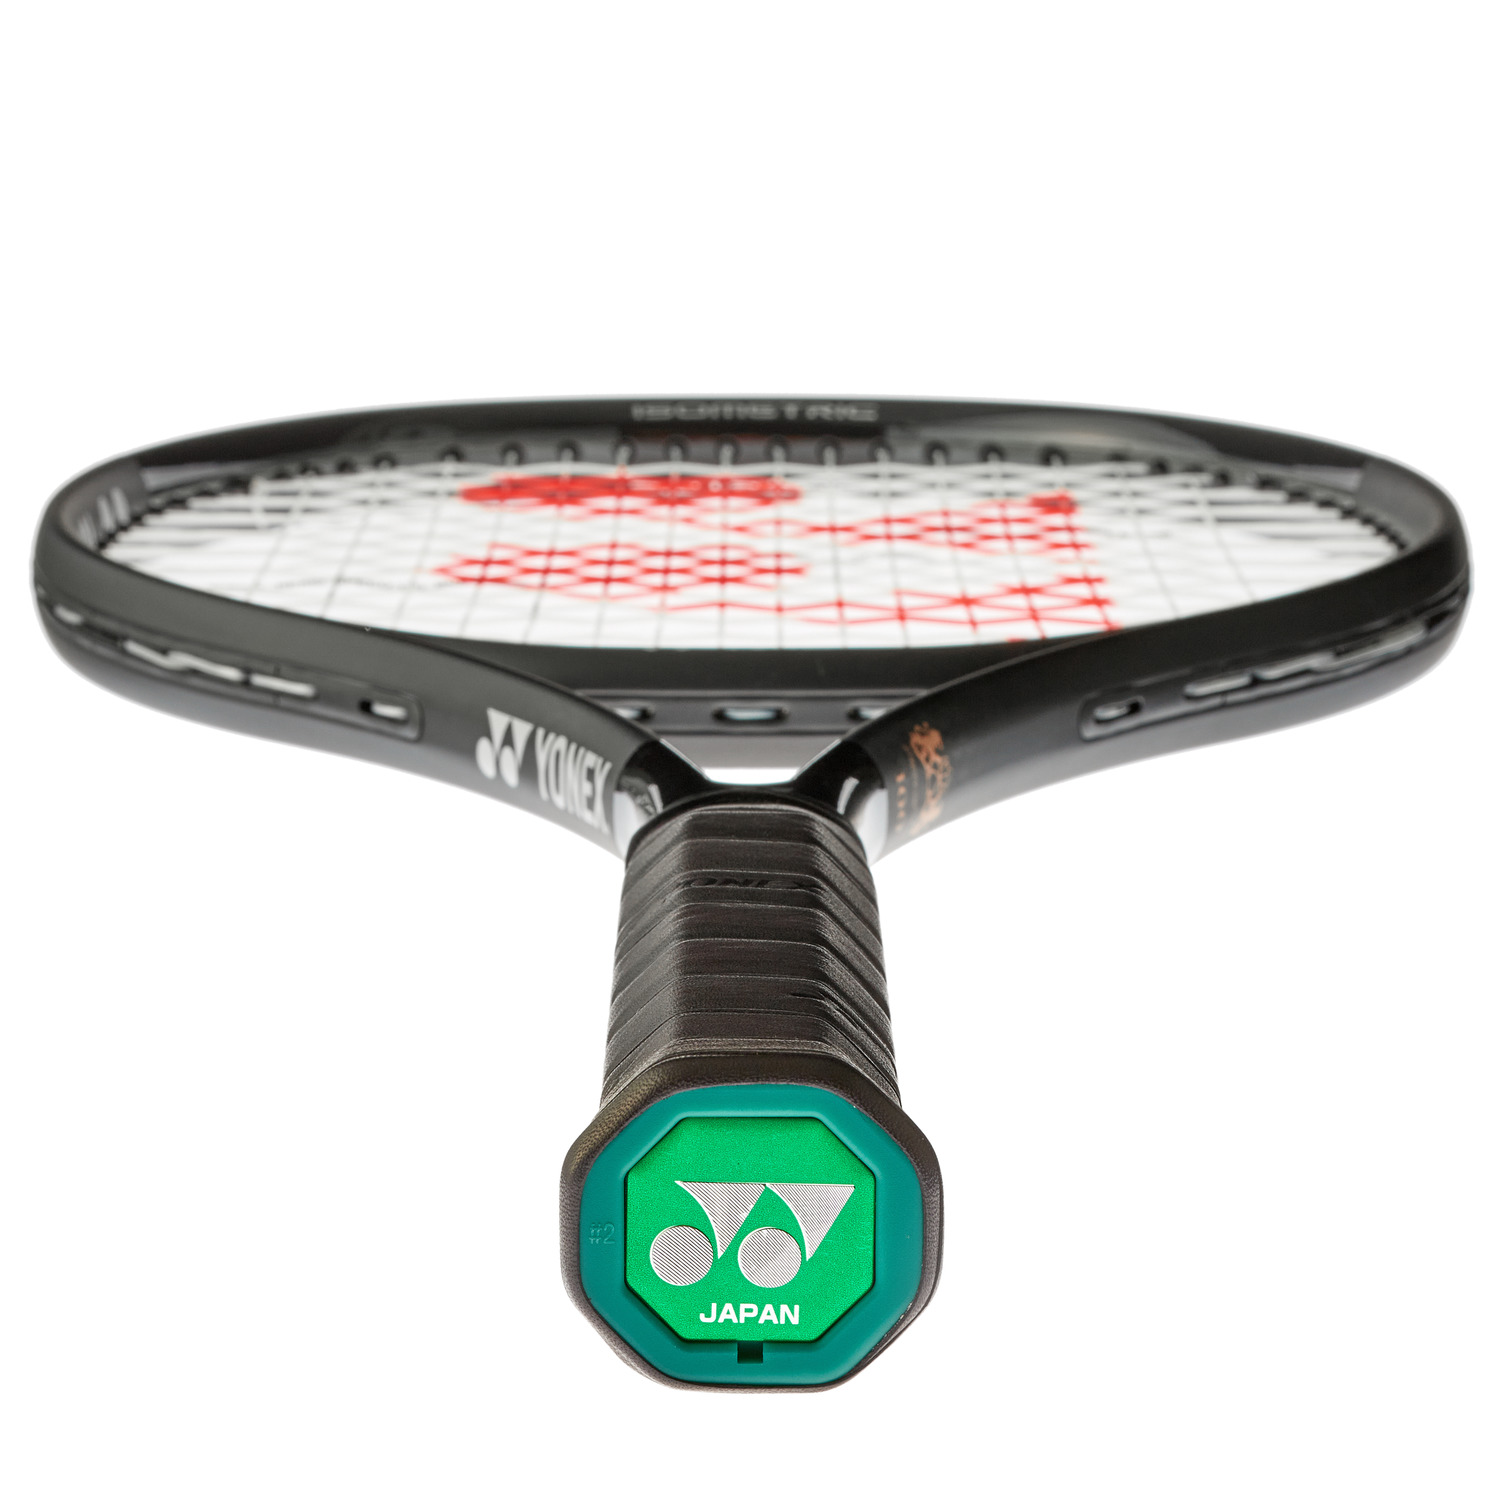 新品ヨネックステニスラケットレグナ100スポーツ/アウトドア - ラケット